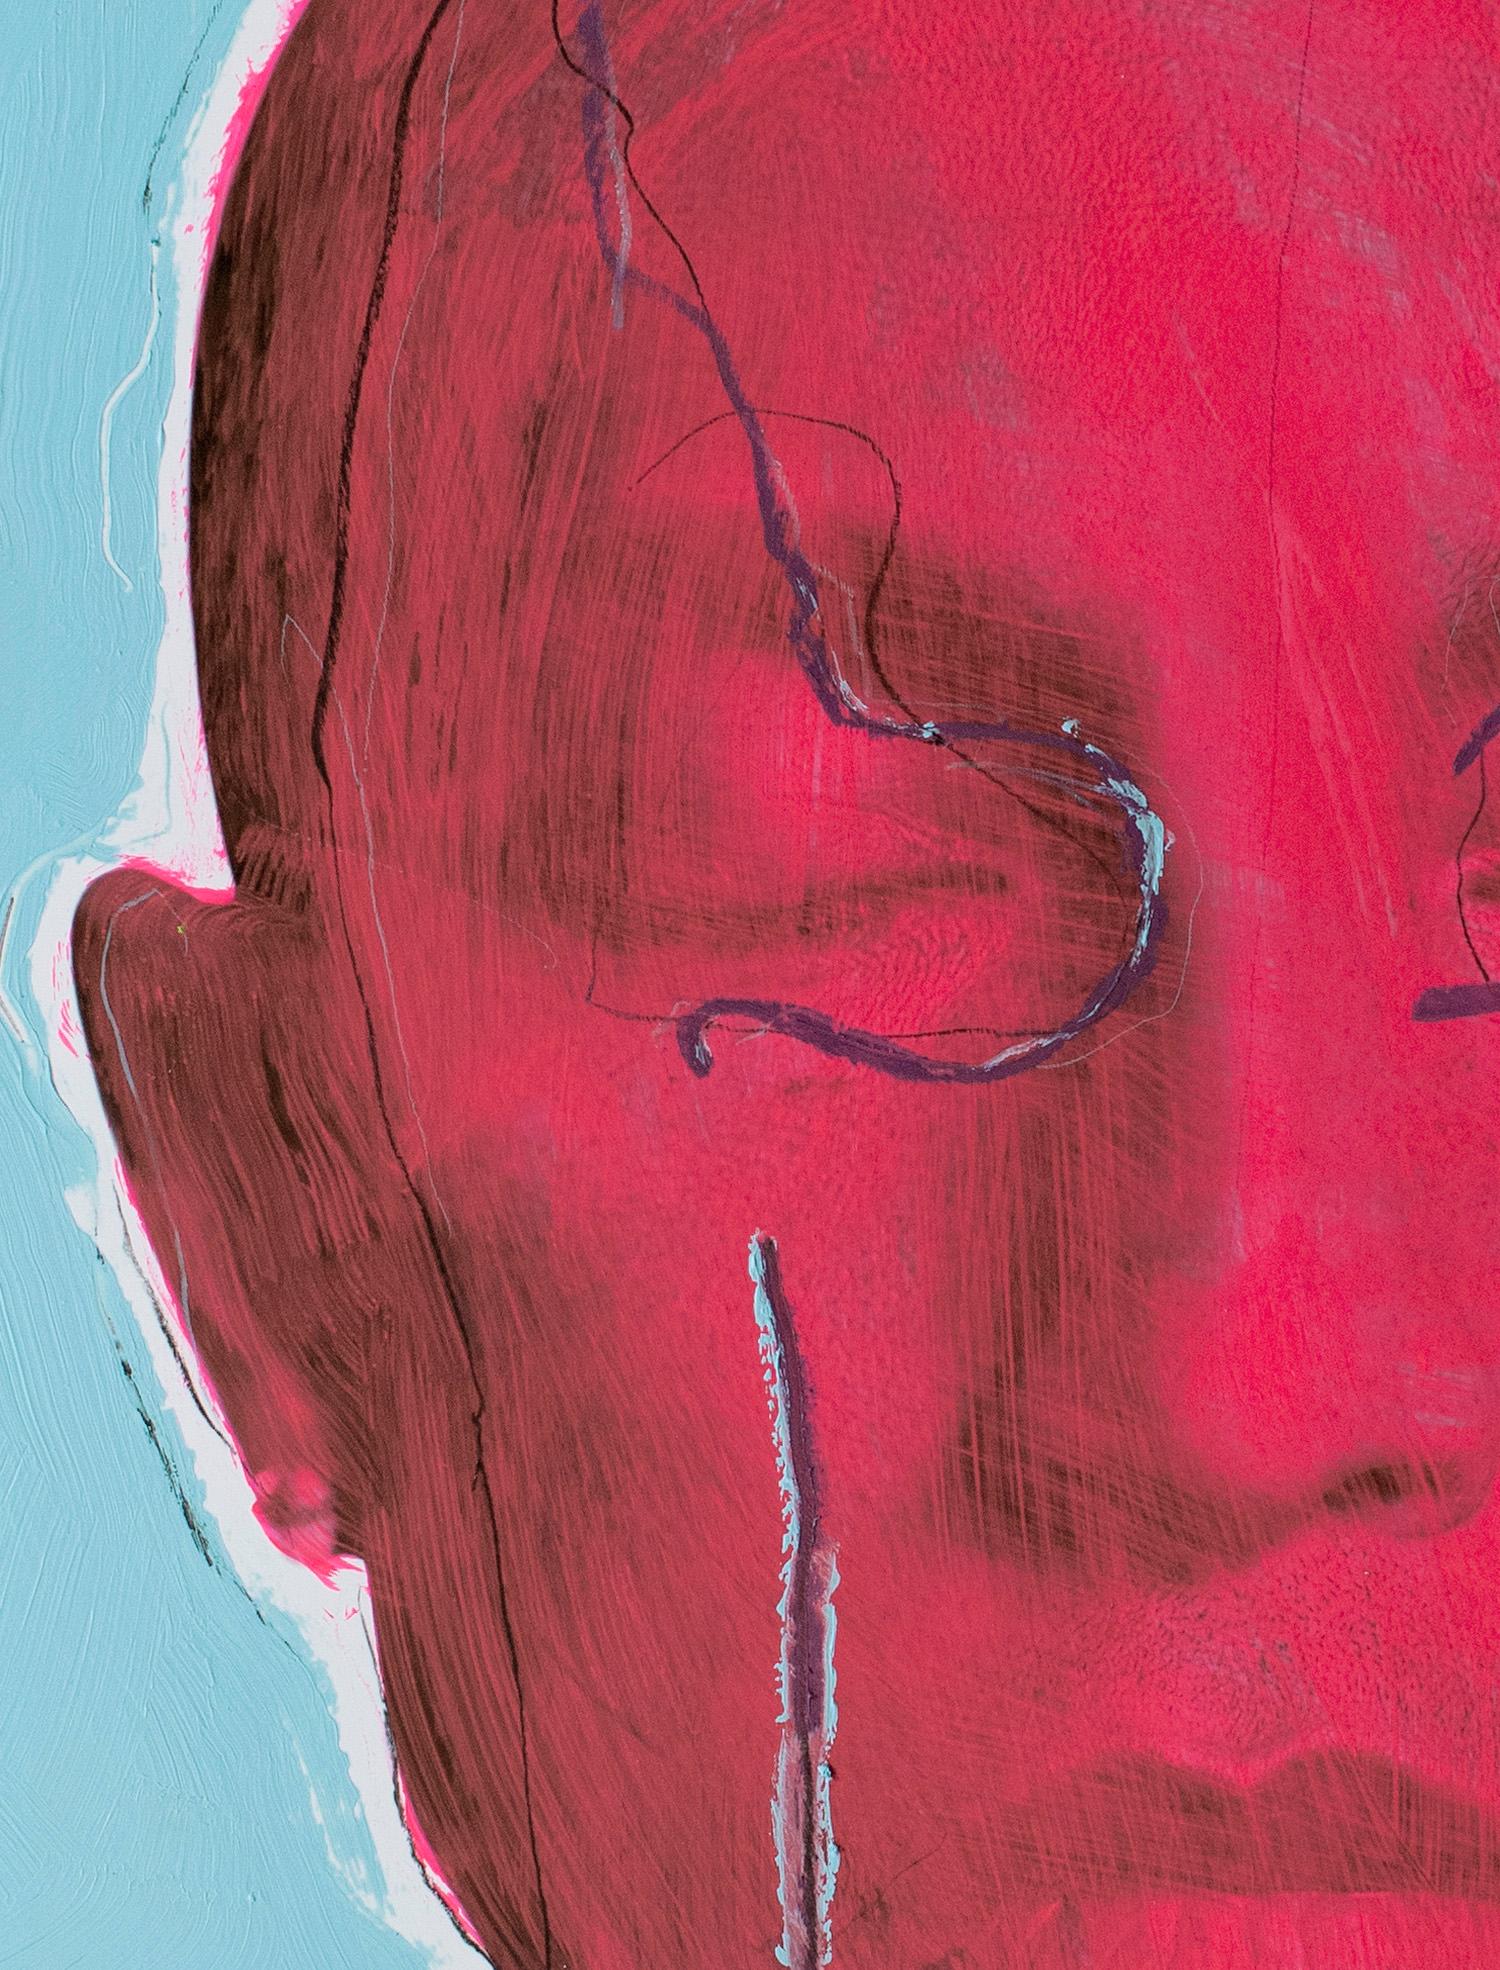 Temporaire, portrait de Pharrell Williams (encadré) 2020, par Hunter & Gatti
Acrylique et pastel à l'huile sur impression pigmentaire
Taille de l'image : 76 cm. H x 61 cm. W
Taille encadrée : 90,5 cm. H x 82,5 cm. L x 5 cm. D
Exemplaire